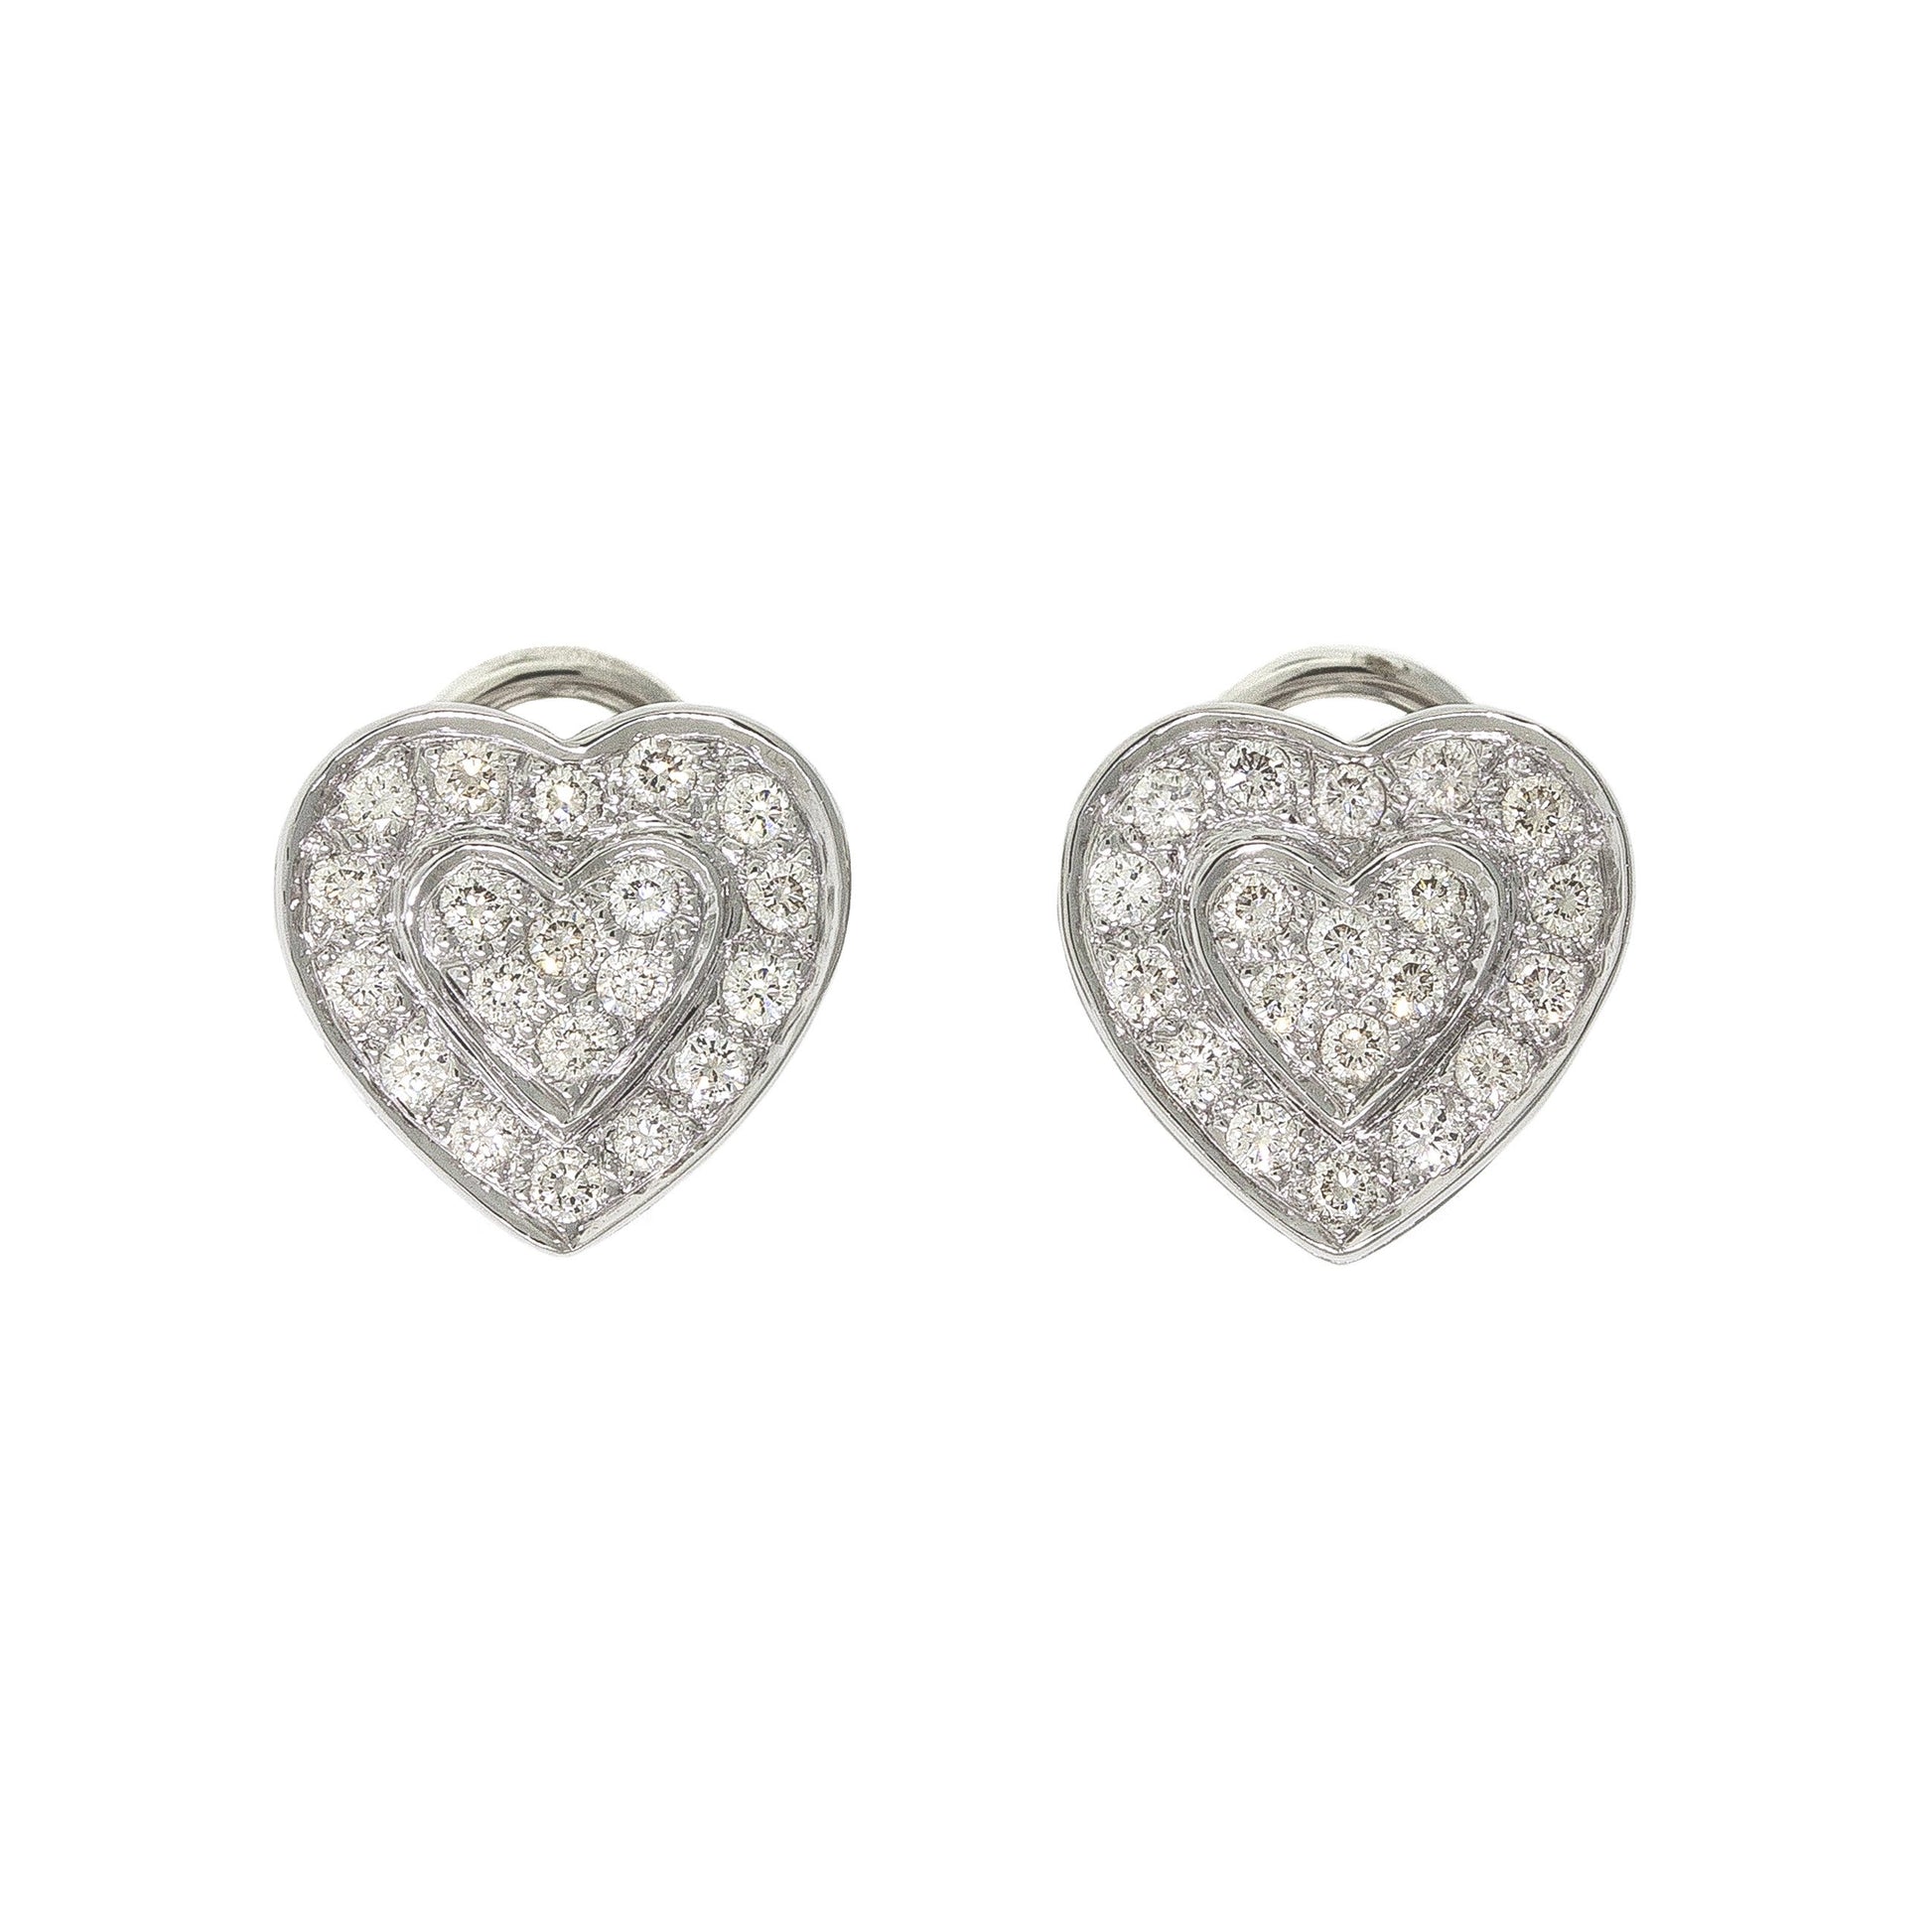   Diamond Earrings